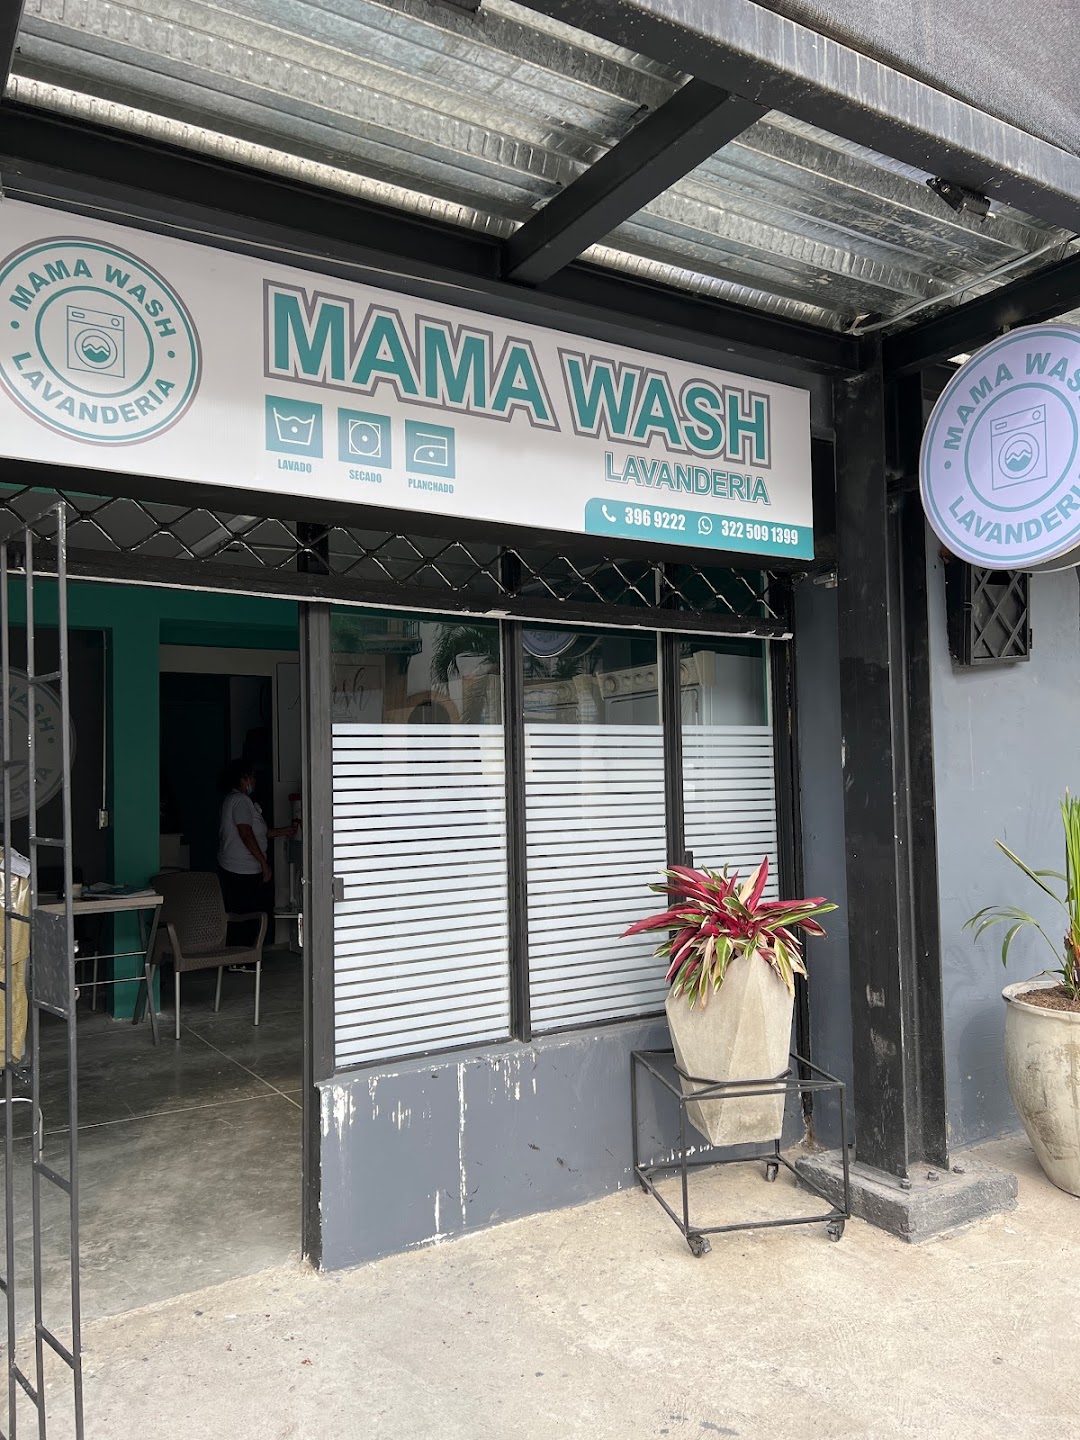 Lavandería Mama wash